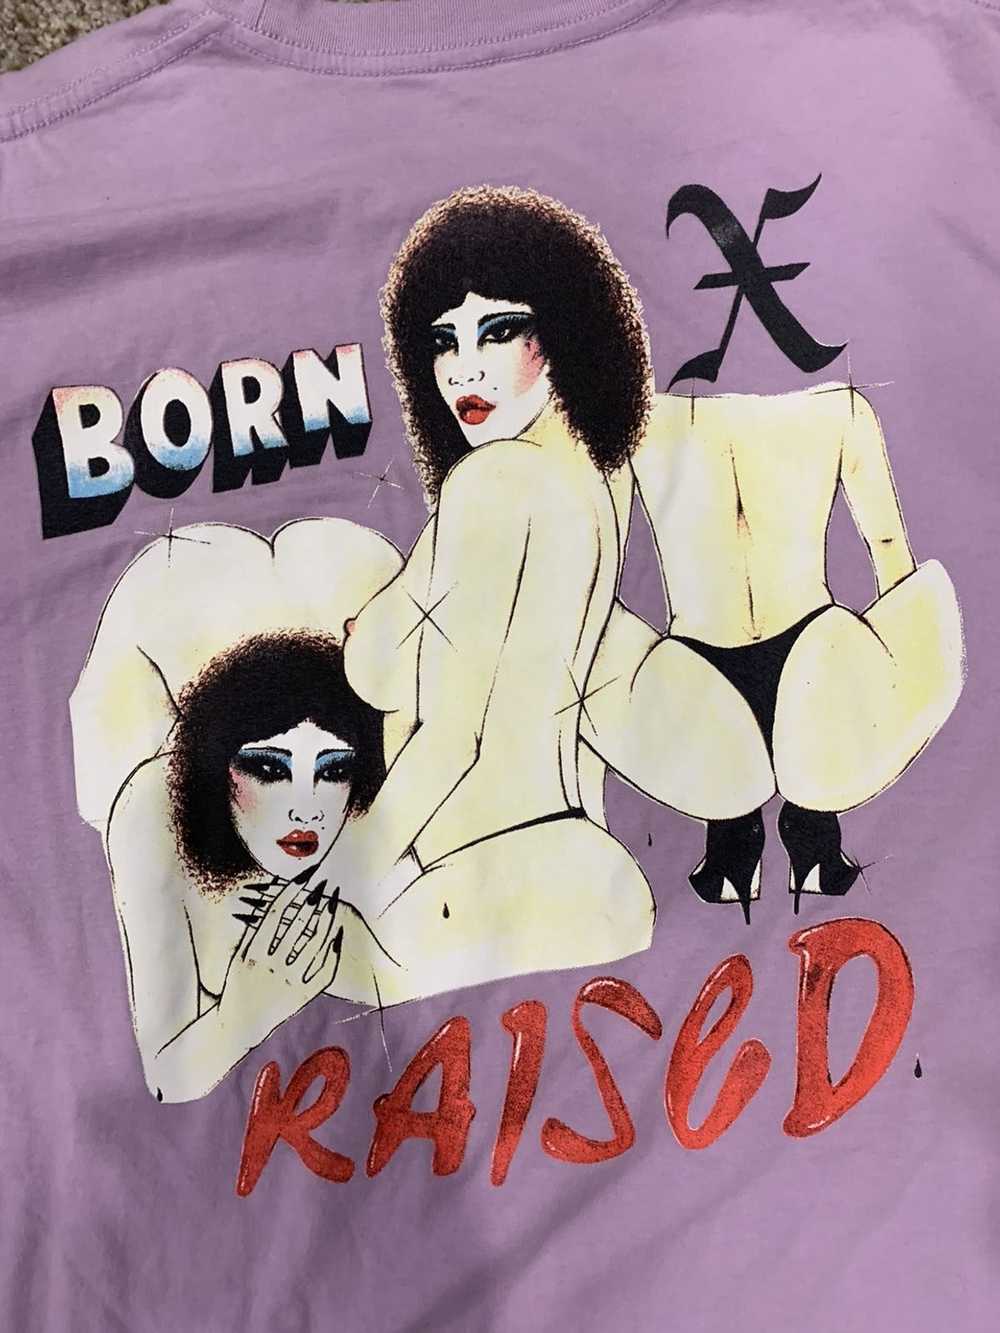 Born X Raised Born x raised woman tee - image 1